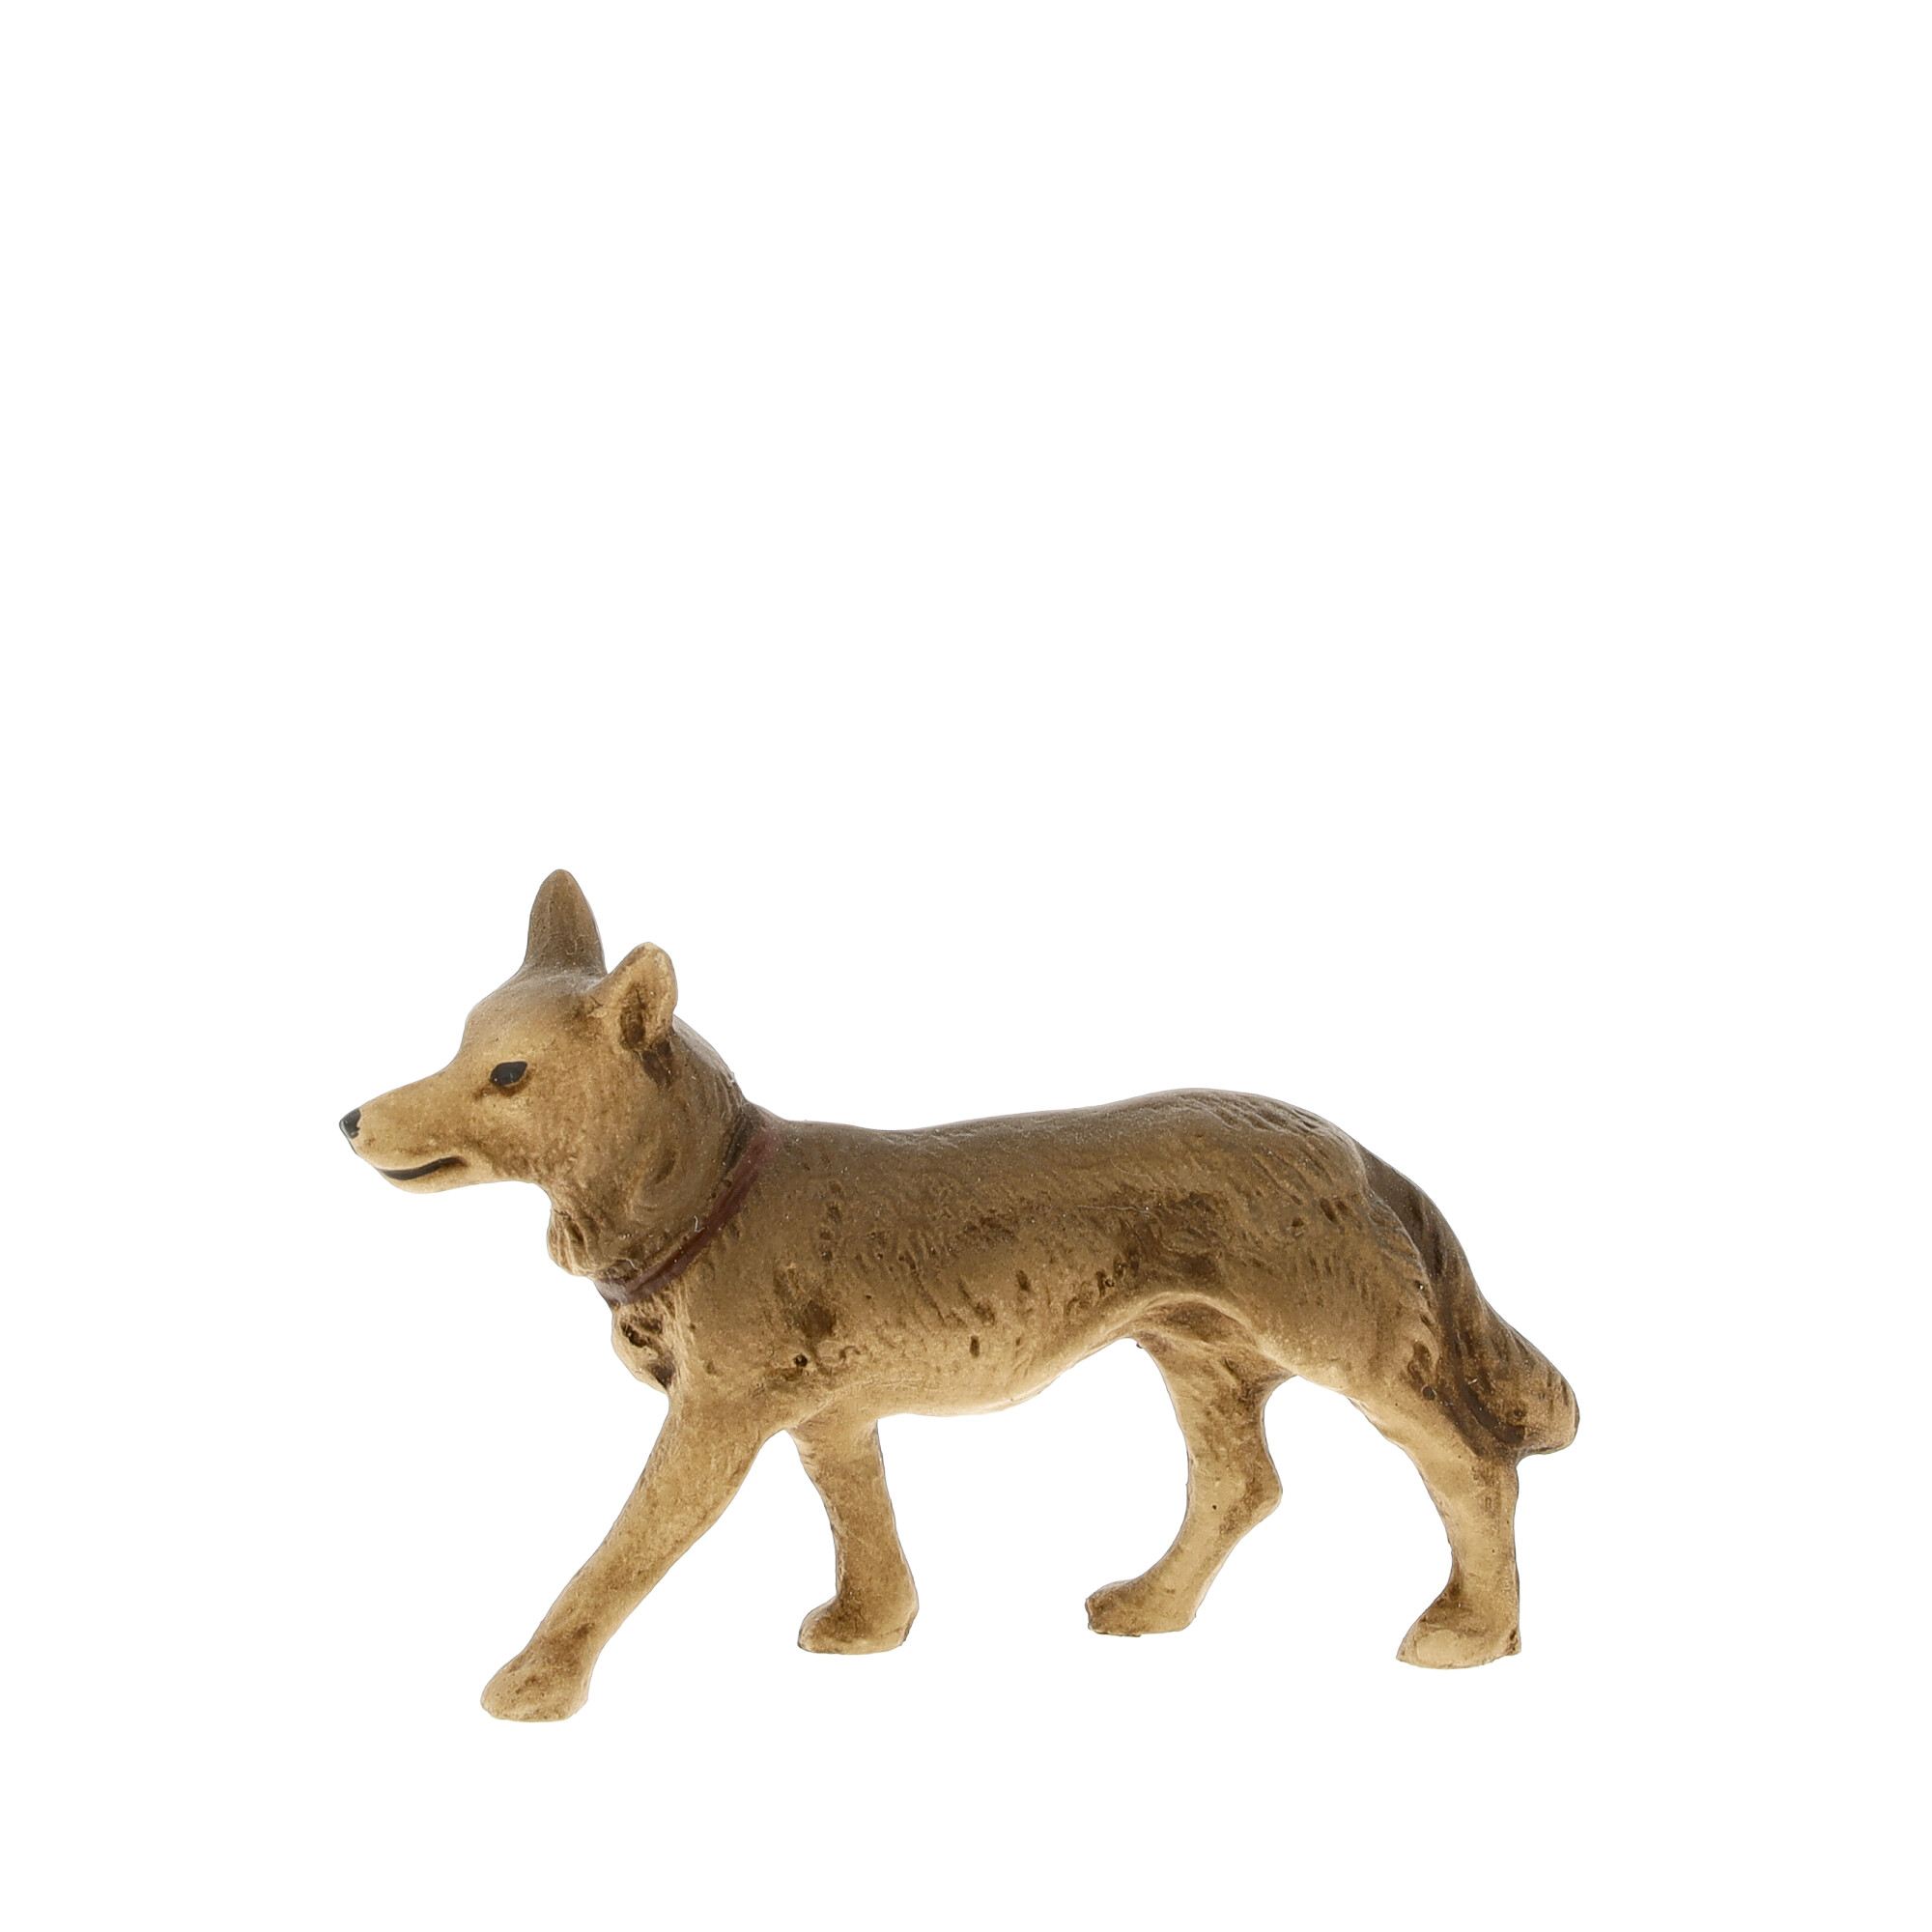 Schäferhund stehend, zu 9 - 10cm Figuren - Original MAROLIN® - Krippenfigur als Dekoration für Ihre Weihnachtskrippe oder Weihnachtspyramide - Made in Germany